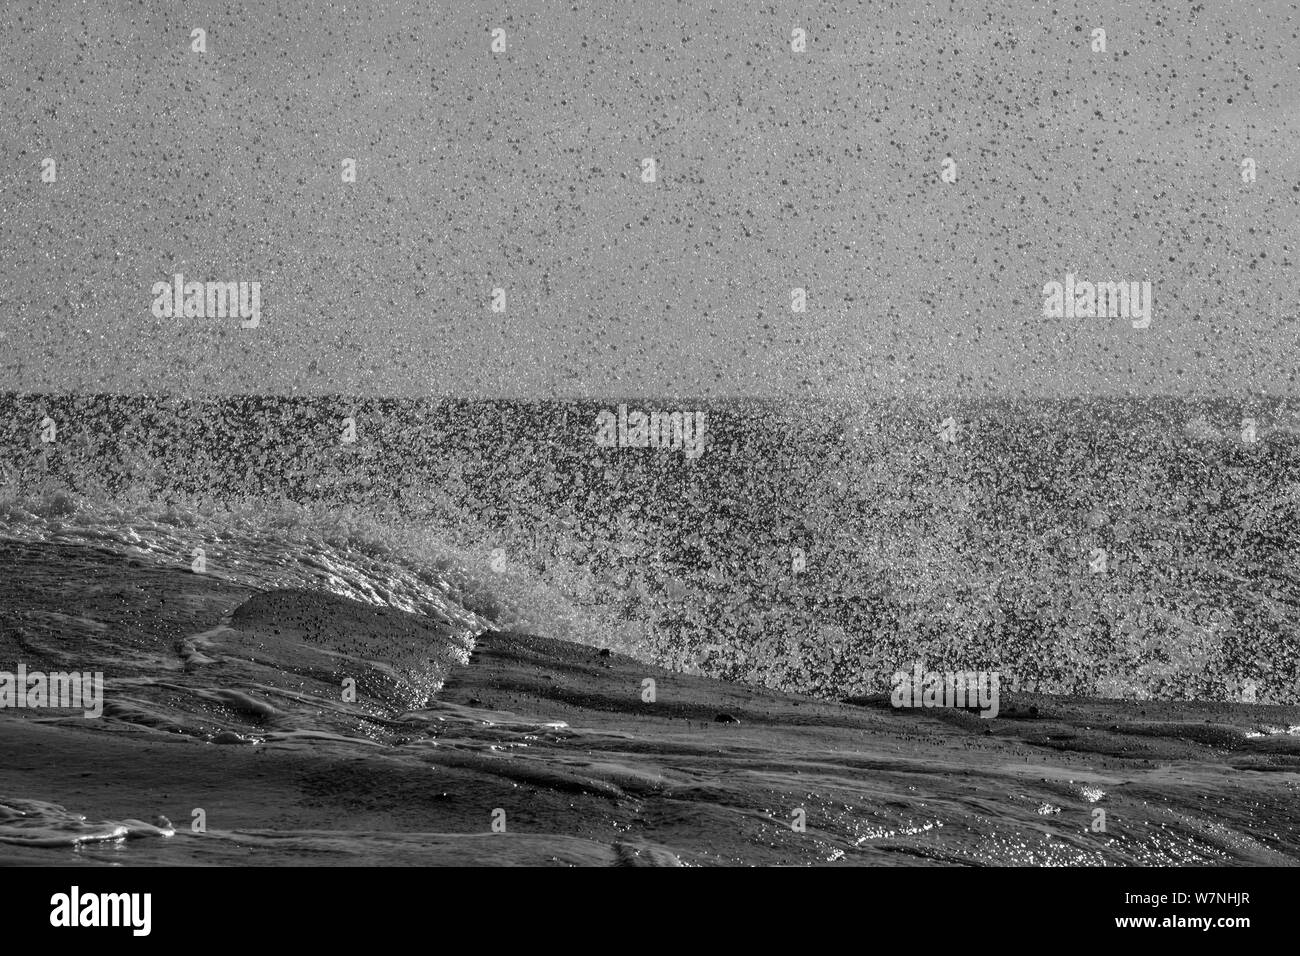 Una immagine in bianco e nero di un onda che si schiantano contro le rocce spray creando una parete d'acqua. Foto Stock